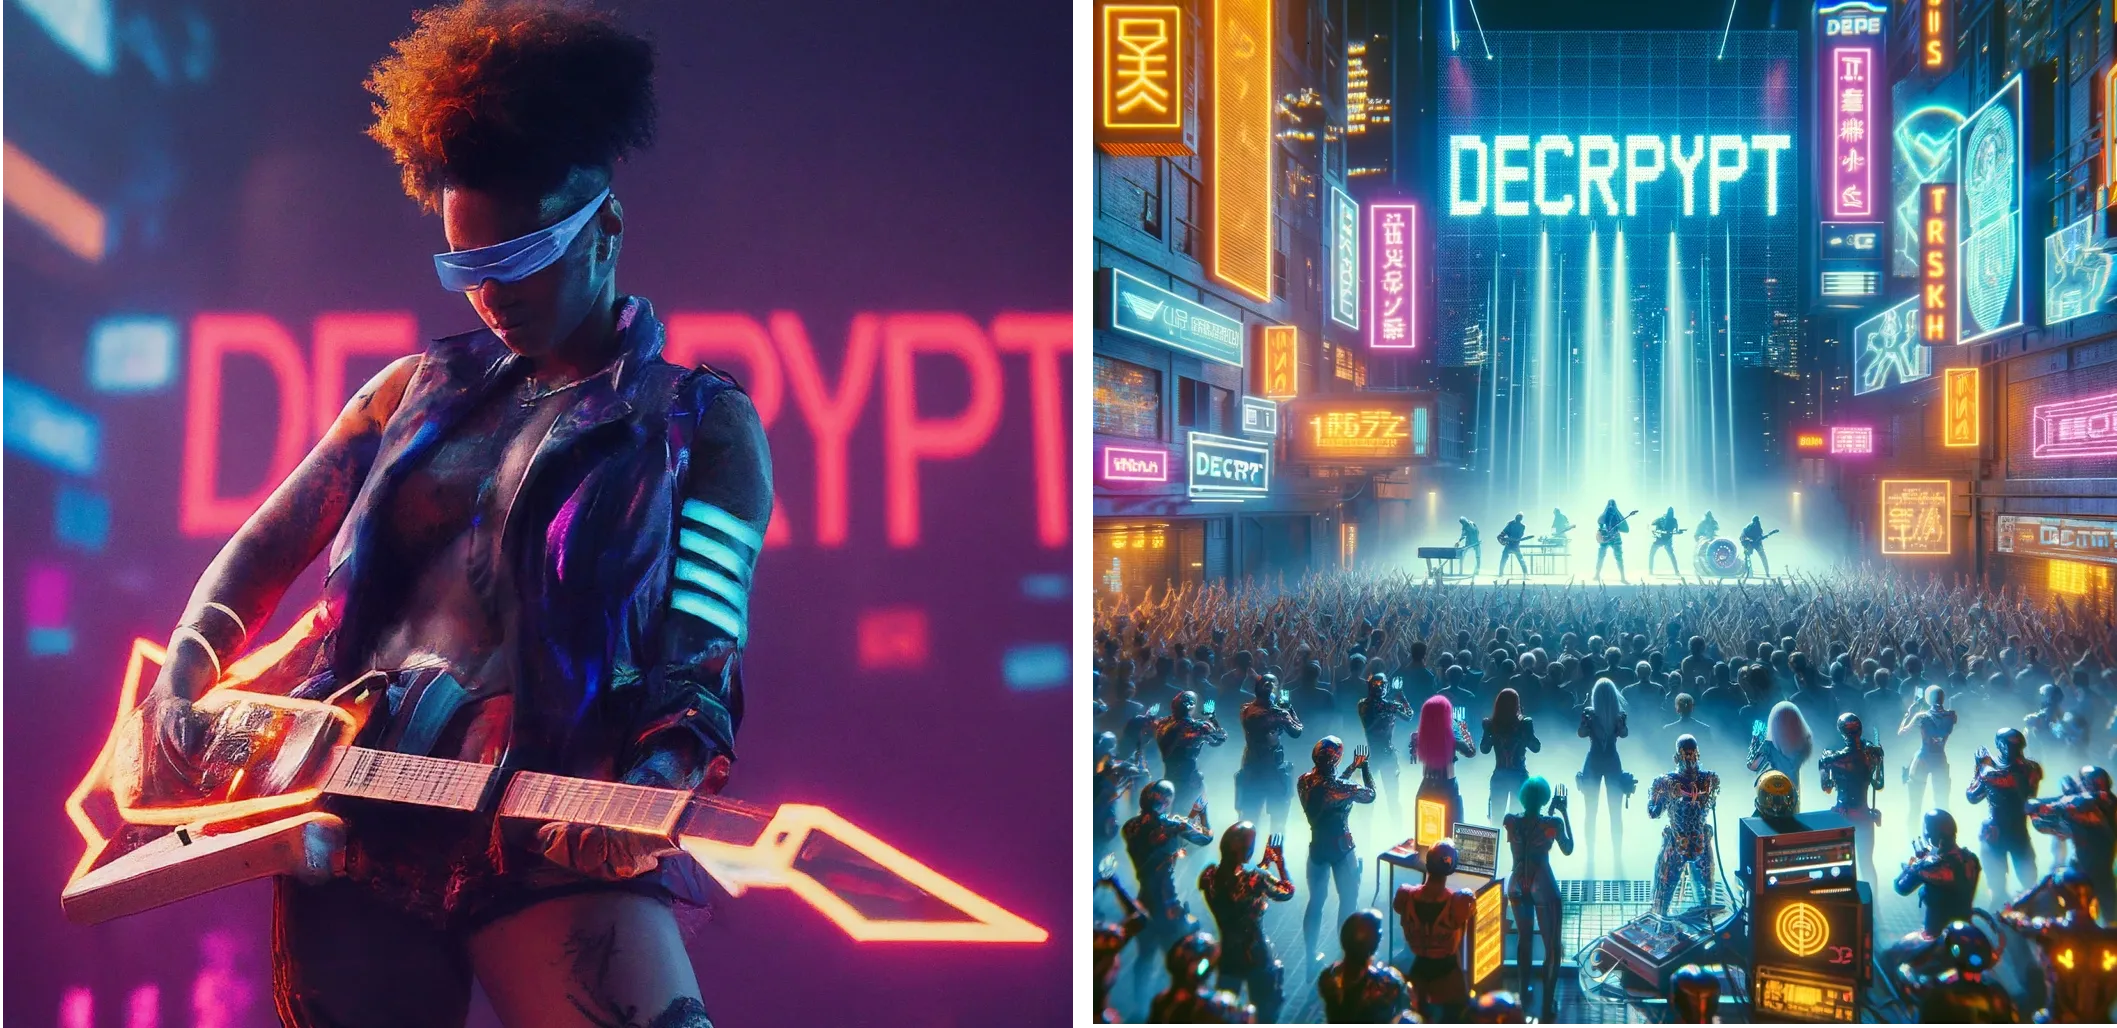 Kiberpunk futuristični umetnik nastopa na odru z besedo "DECRYPT" v neonskih lučeh v ozadju. Gemini (levo) proti ChatGPT Plus (desno)